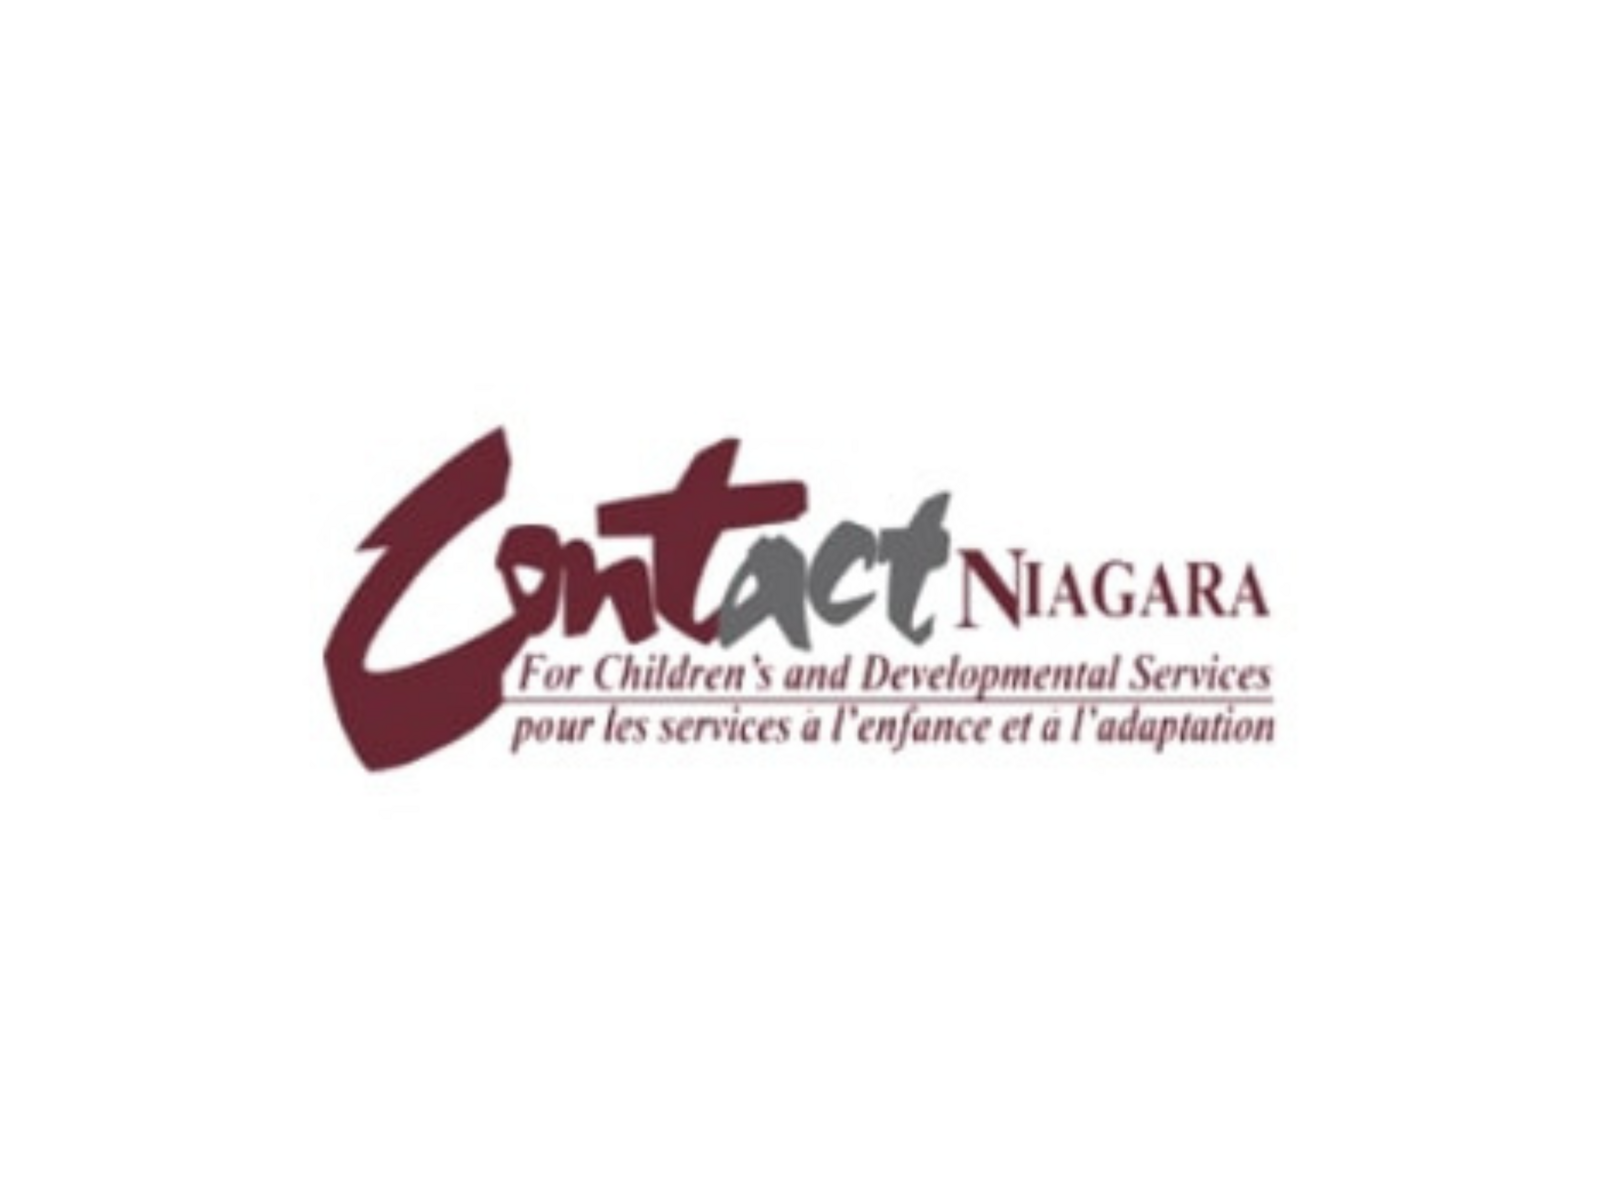 Contact Niagara